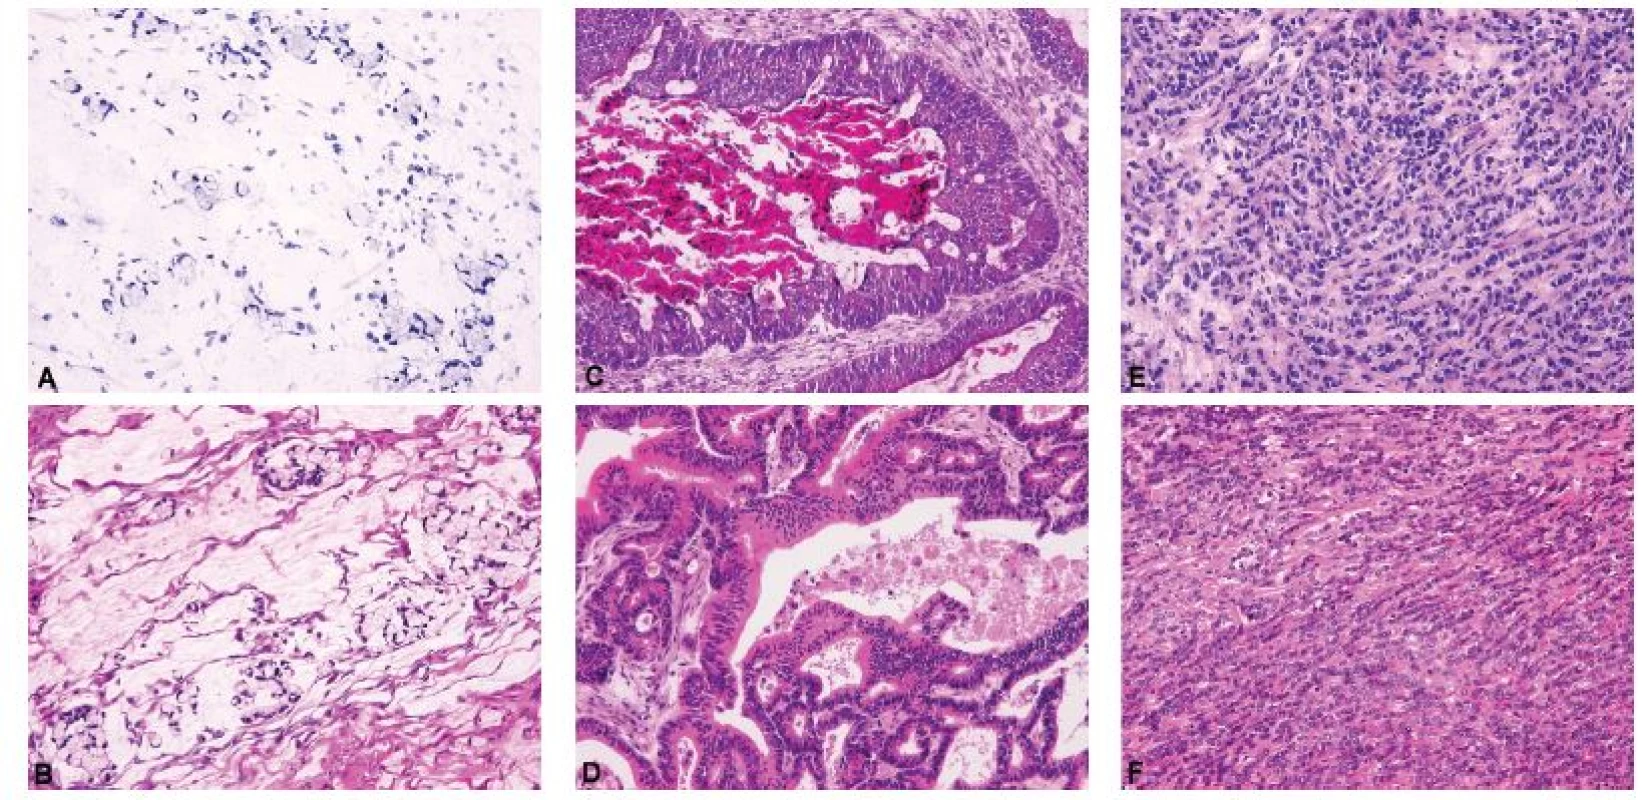 Široké morfologické spektrum metastatických karcinomů do ovaria.<br>
A – metastatický špatně kohezivní adenokarcinom žaludku s výraznou extracelulární hlenotvorbou a stromálními jezírky hlenu (Krukenbergův nádor) (peroperačně
hlášeno jako metastatický adenokarcinom nejspíše z gastrointestinálního traktu) (peroperační vyšetření, HE, 200x); B – metastatický špatně kohezivní
adenokarcinom žaludku s výraznou extracelulární hlenotvorbou a stromálními jezírky hlenu (Krukenbergův nádor) (definitivní vyšetření, HE, 200x); C – metastatický
adenokarcinom tlustého střeva (peroperačně hlášeno jako vysoce suspektní metastatický adenokarcinom nejspíše z tlustého střeva, nicméně diferenciálně
diagnosticky nelze jednoznačně vyloučit primární nebo metastatický endometroidní karcinom) (peroperační vyšetření, HE, 200x); D – metastatický
adenokarcinom tlustého střeva (definitivní vyšetření, HE, 200x); E – metastatický lobulární karcinom mléčné žlázy (peroperačně hlášeno jako metastatický
adenokarcinom nejspíše z mléčné žlázy anebo z gastrointestinálního traktu) (peroperační vyšetření, HE, 200x); F – metastatický lobulární karcinom mléčné
žlázy (definitivní vyšetření, HE, 200x)